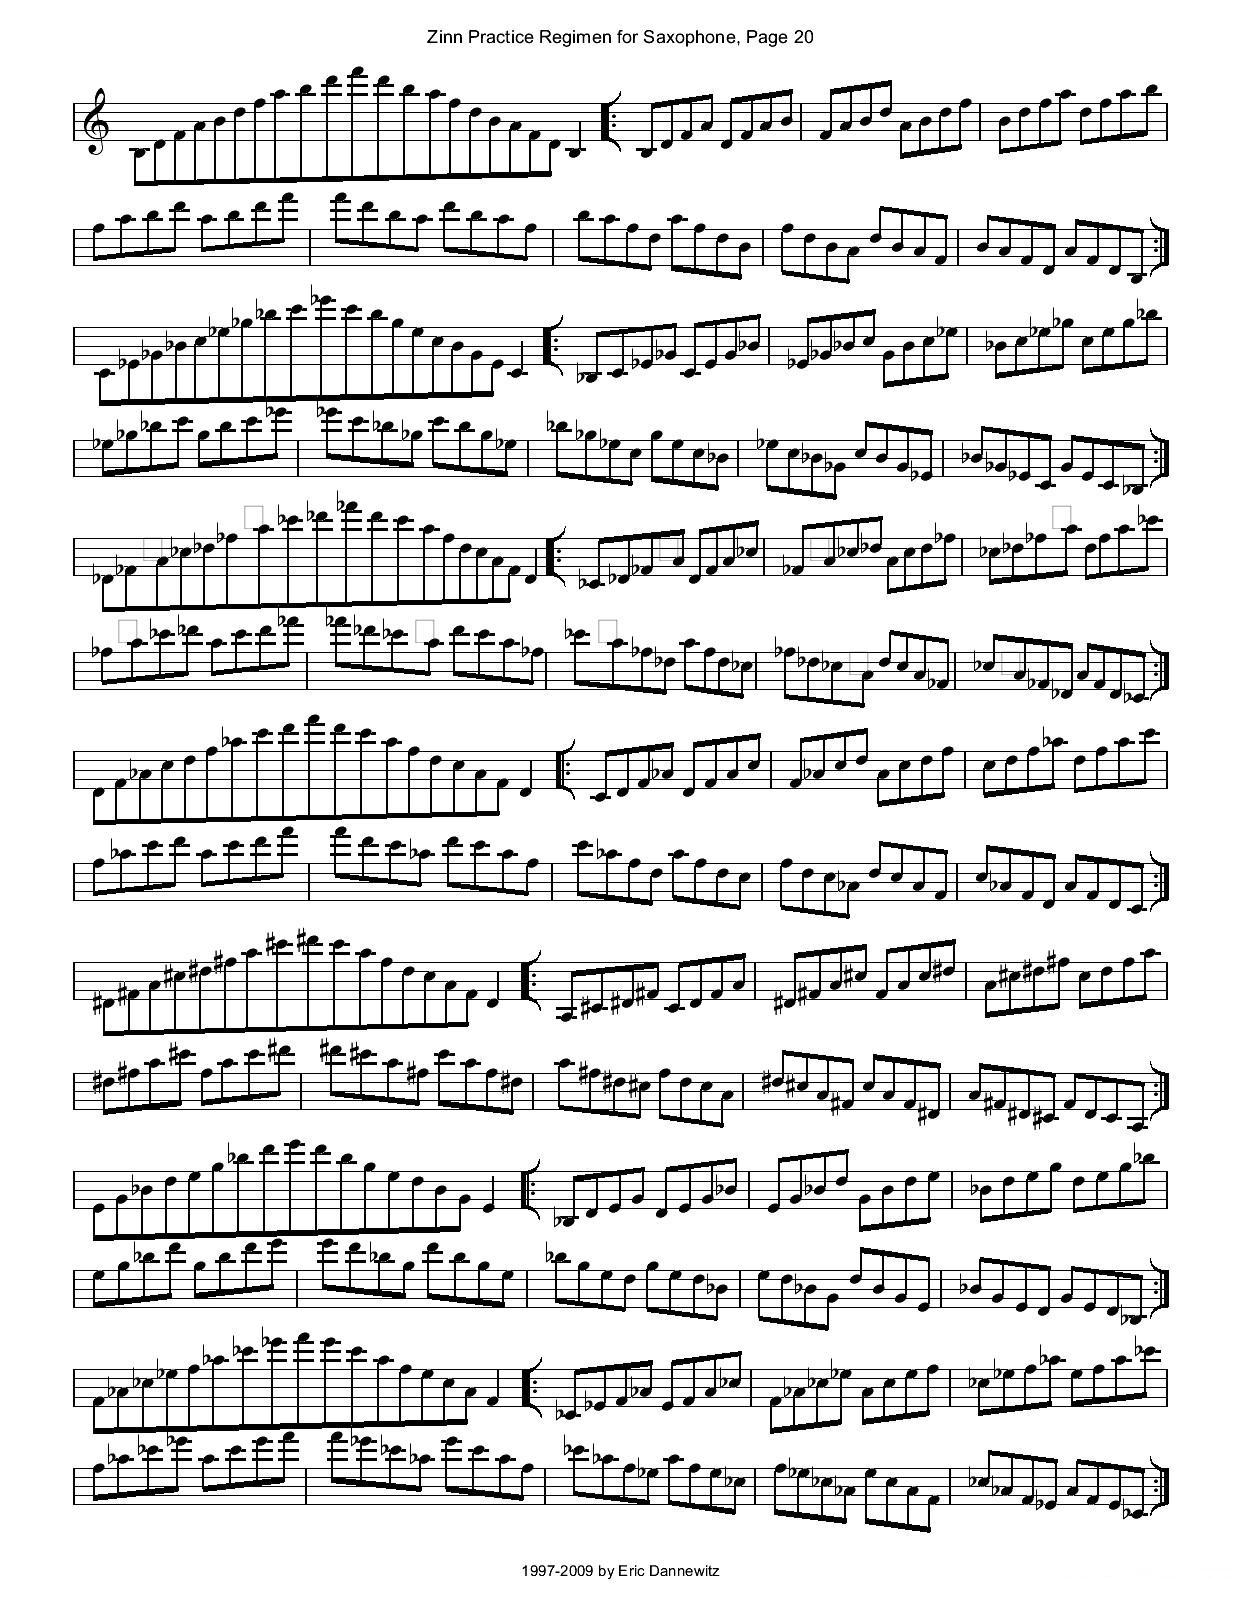 ZinnRegimenSax2009练习曲萨克斯曲谱（图23）